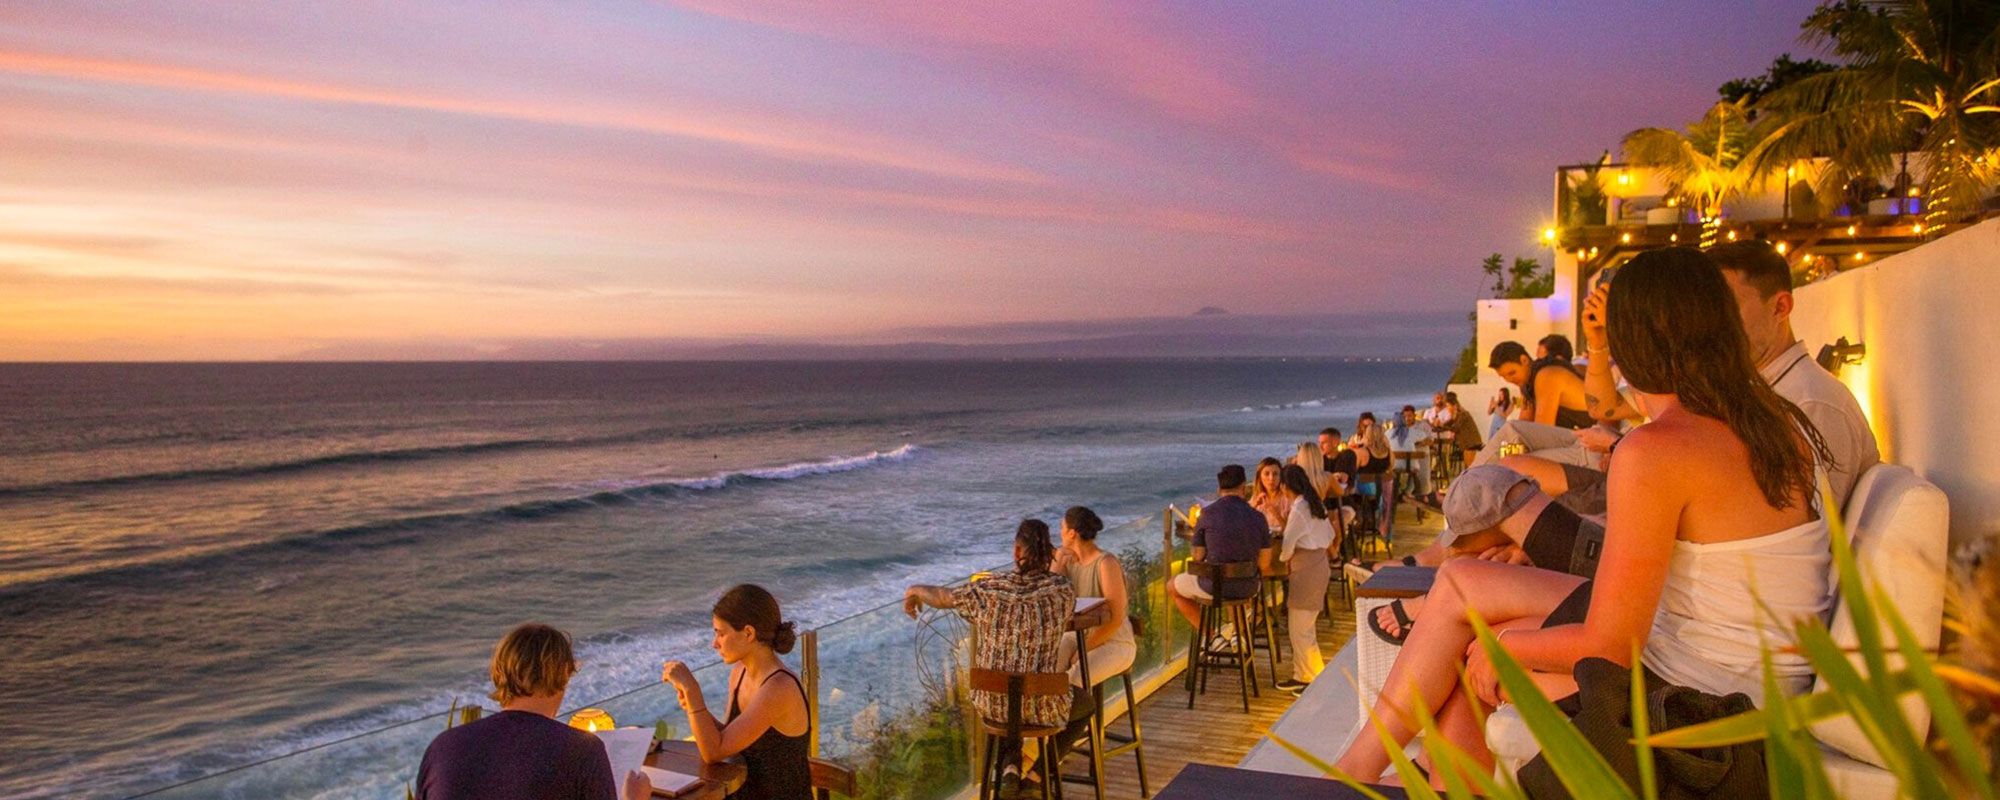 Rekomendasi Beach Club Free Entry di Bali yang Menarik untuk Dikunjungi